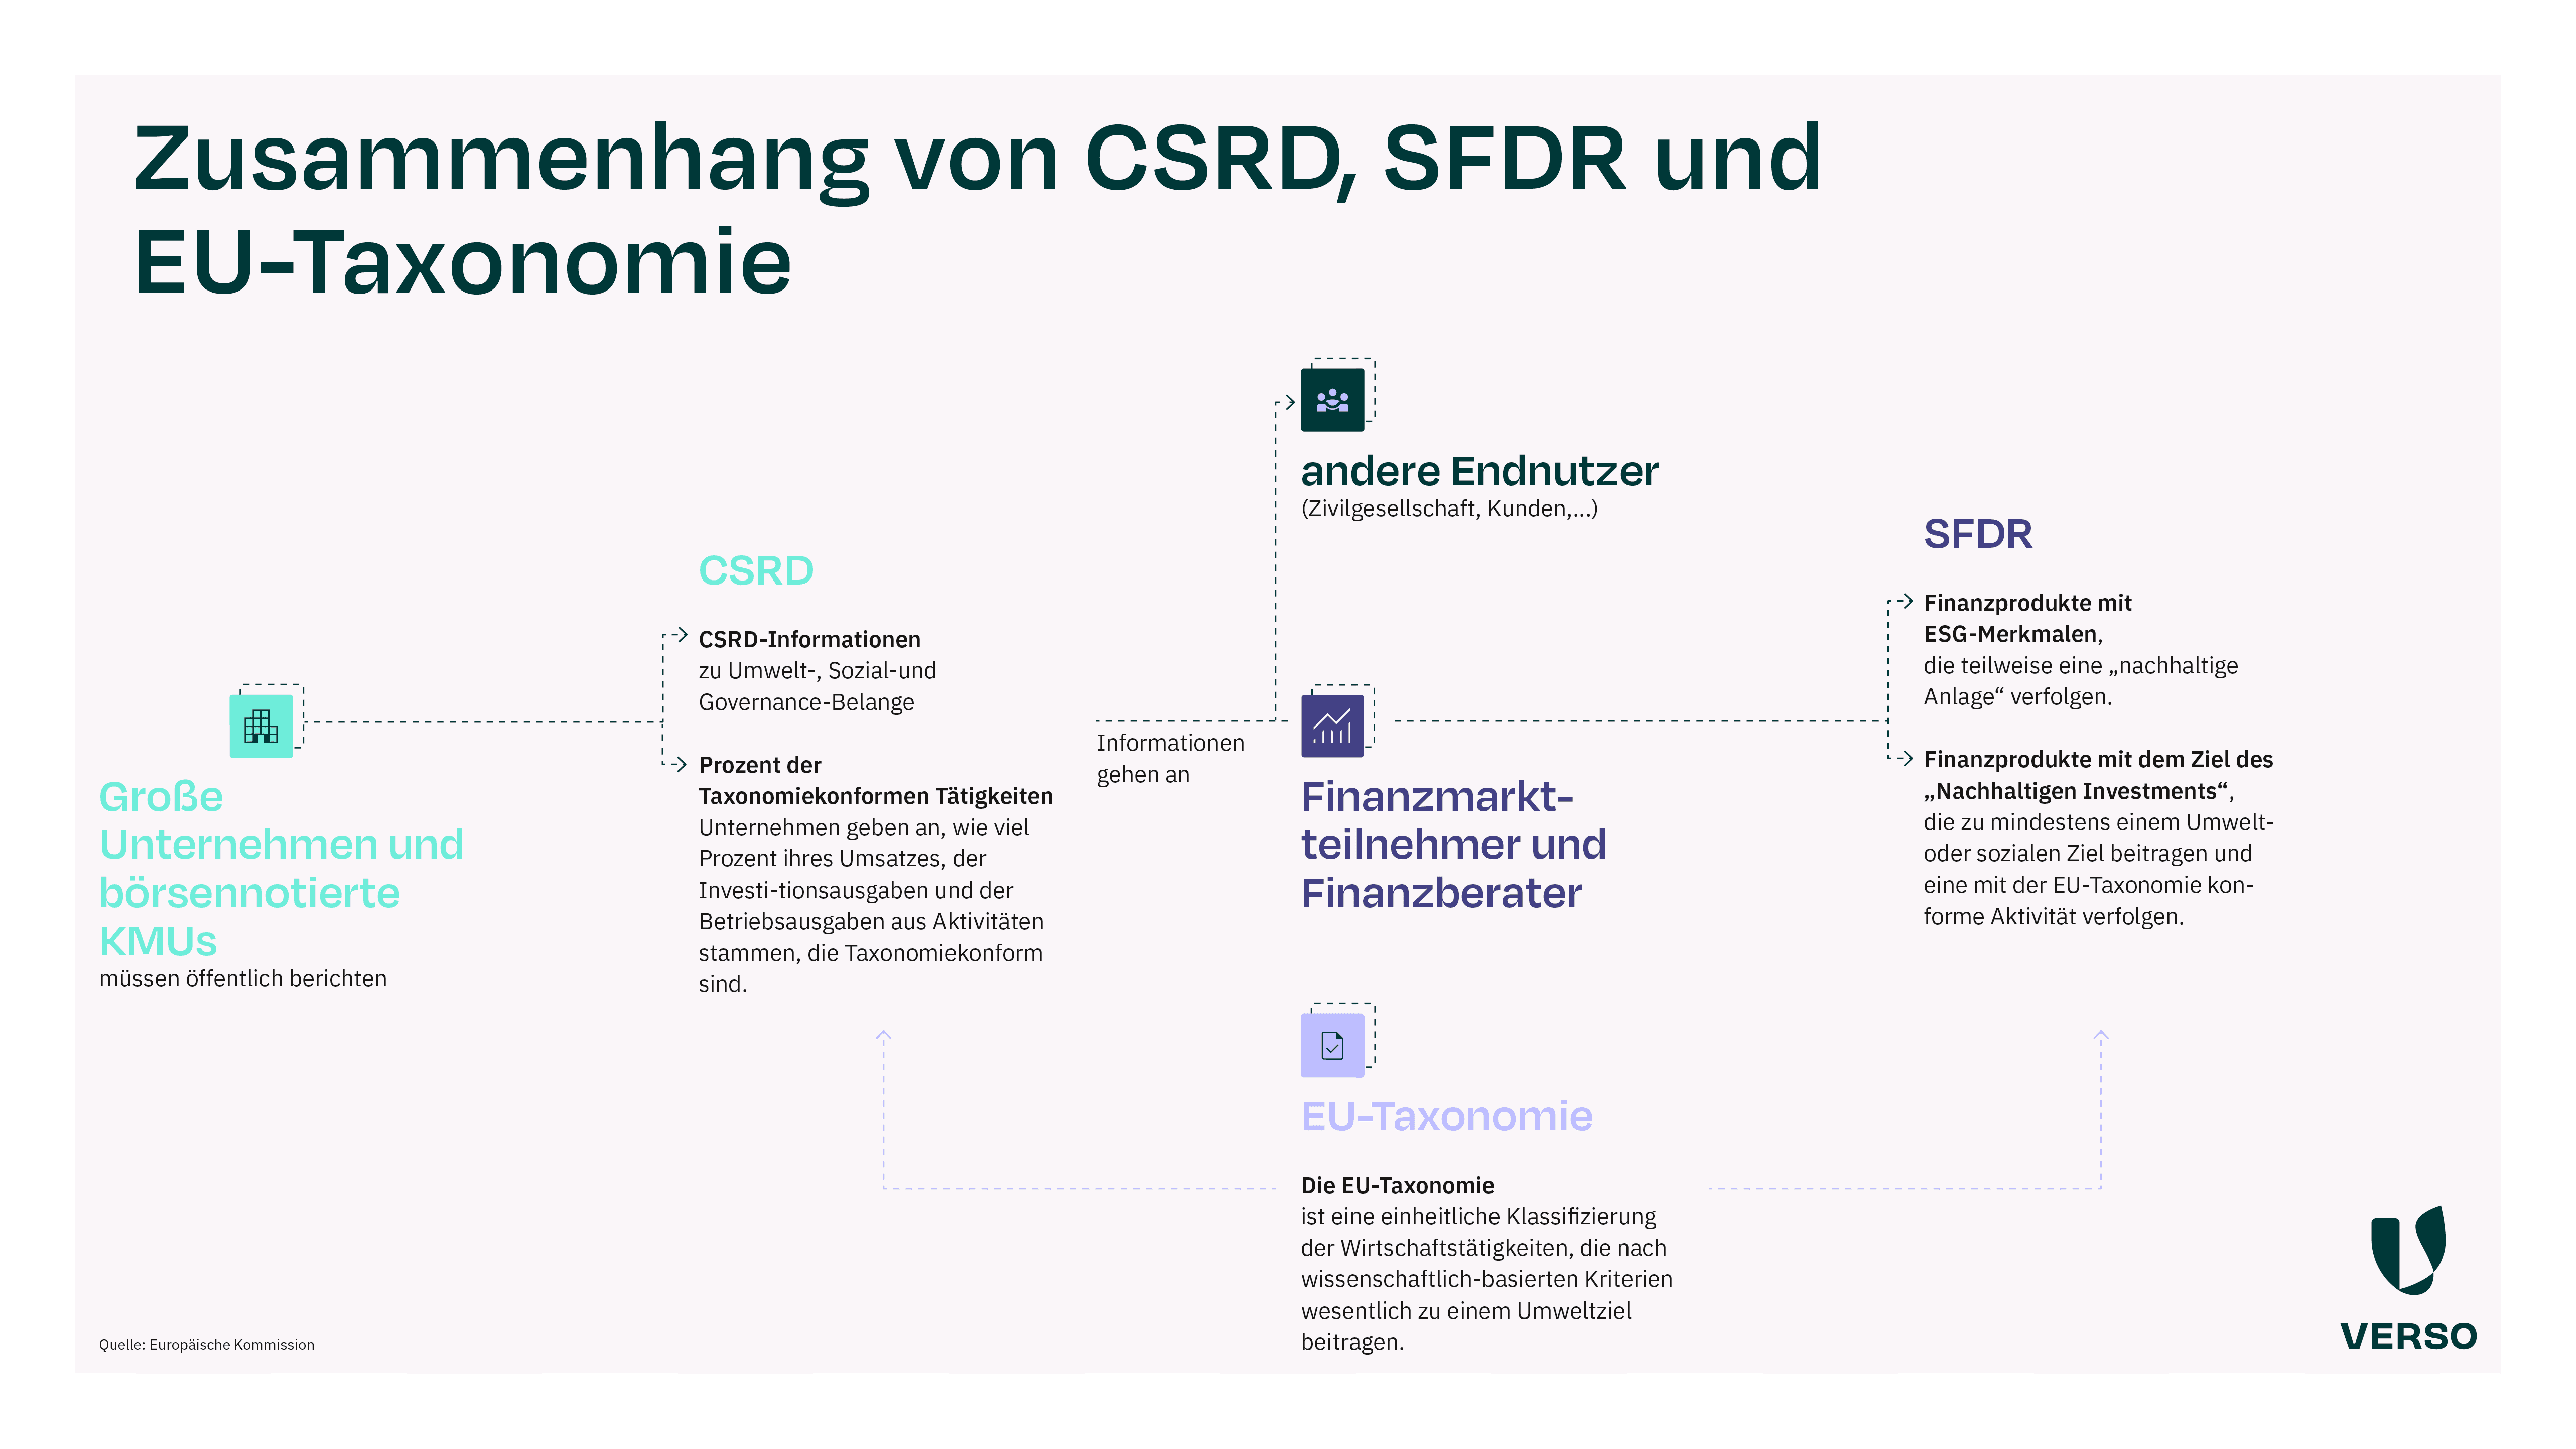 Zusammenhang von CSRD, SFDR und EU-Taxonomie